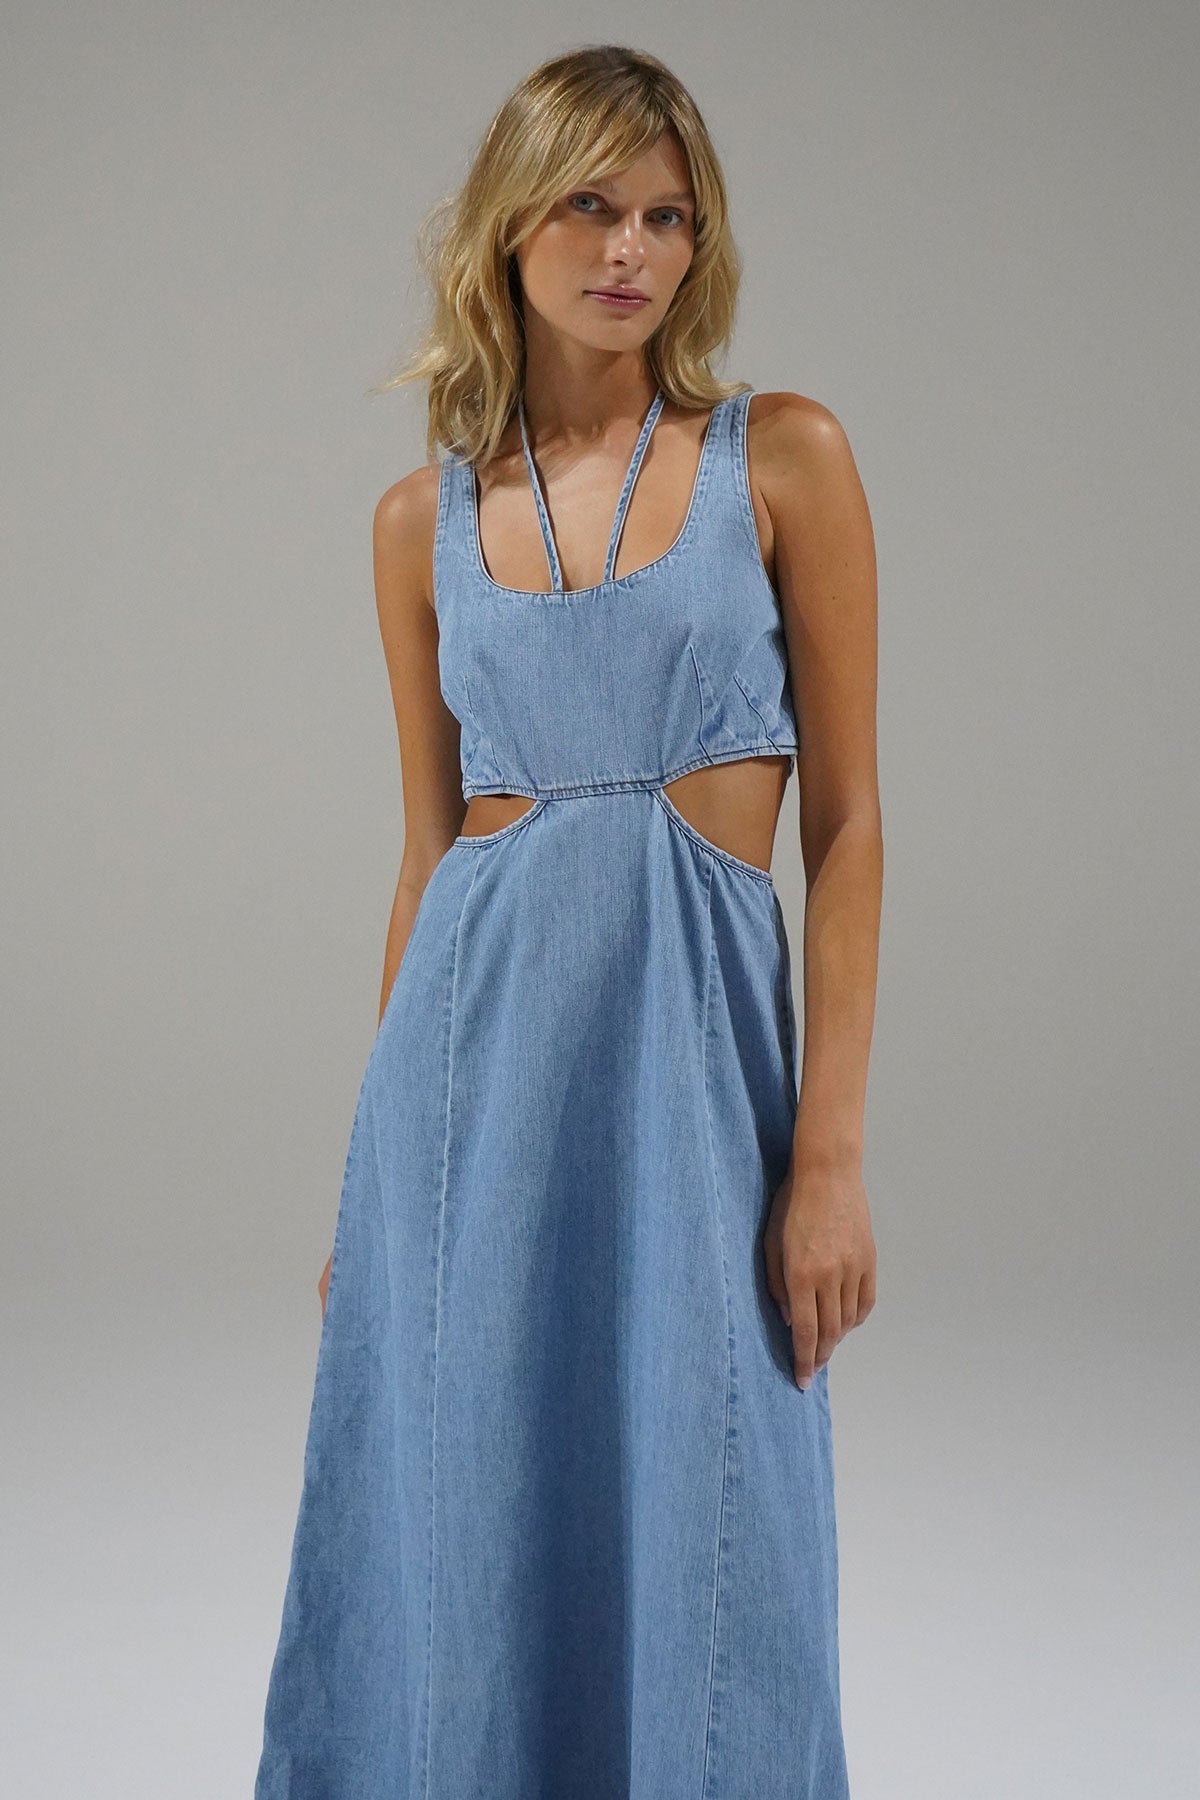 Lorelei Chambray Dress - Faded Blue